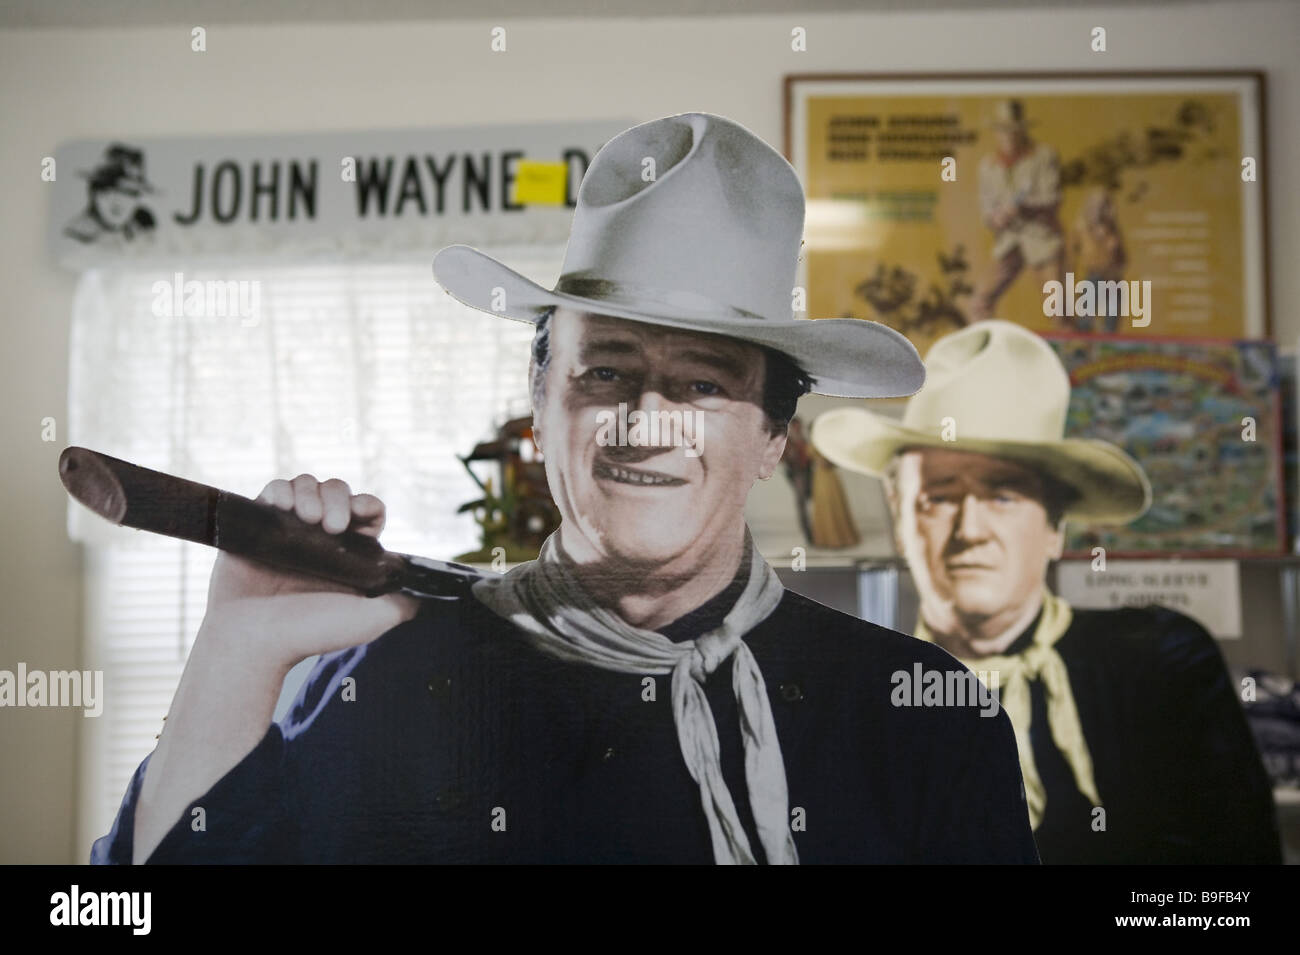 Usa Iowa Comté de Madison-set d'hiver John Wayne lieus de naissance Illustration exposition mémoire Amérique célèbre cowboy Banque D'Images